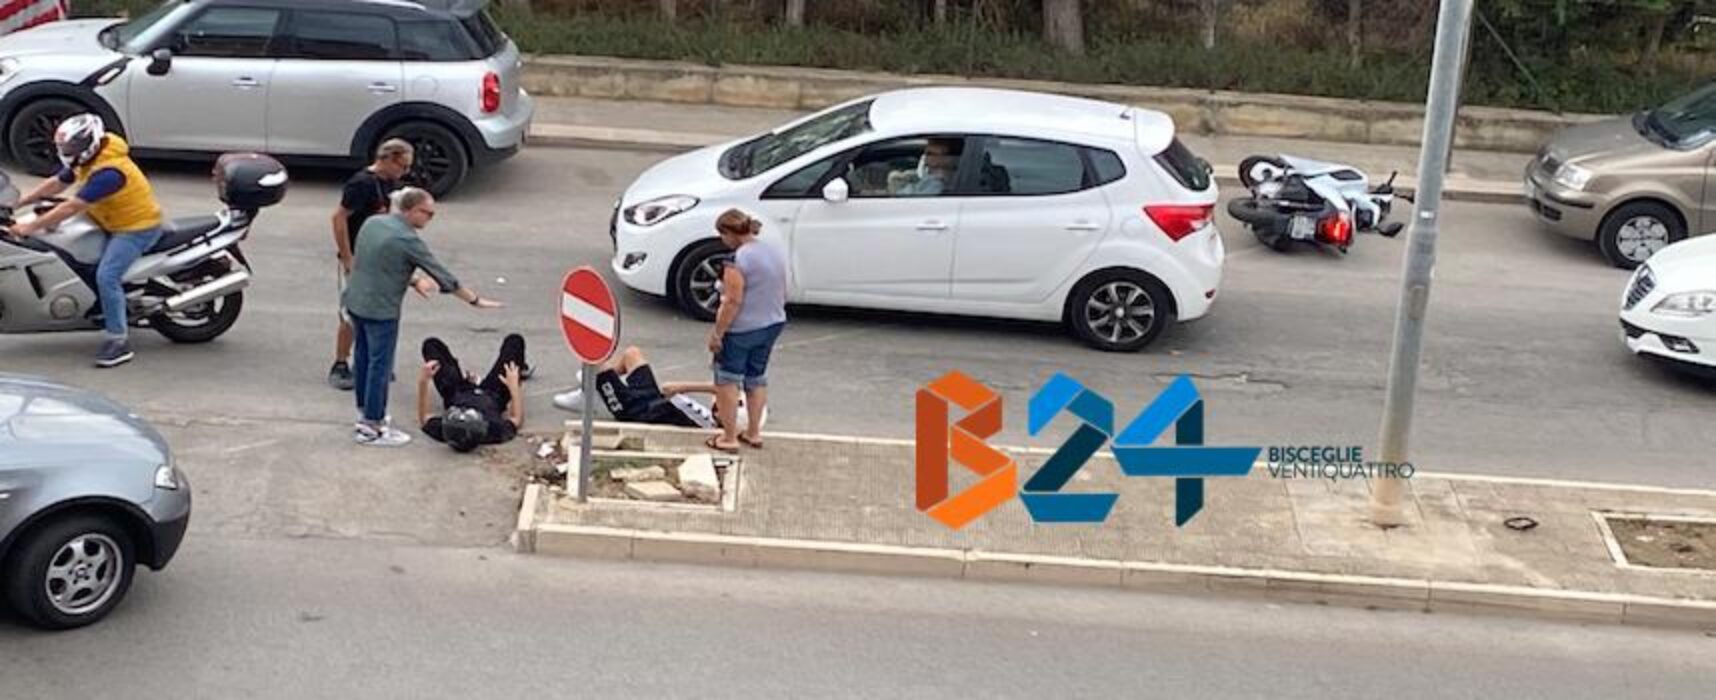 Incidente tra auto e scooter in via San Martino: due ragazzi finiscono in ospedale